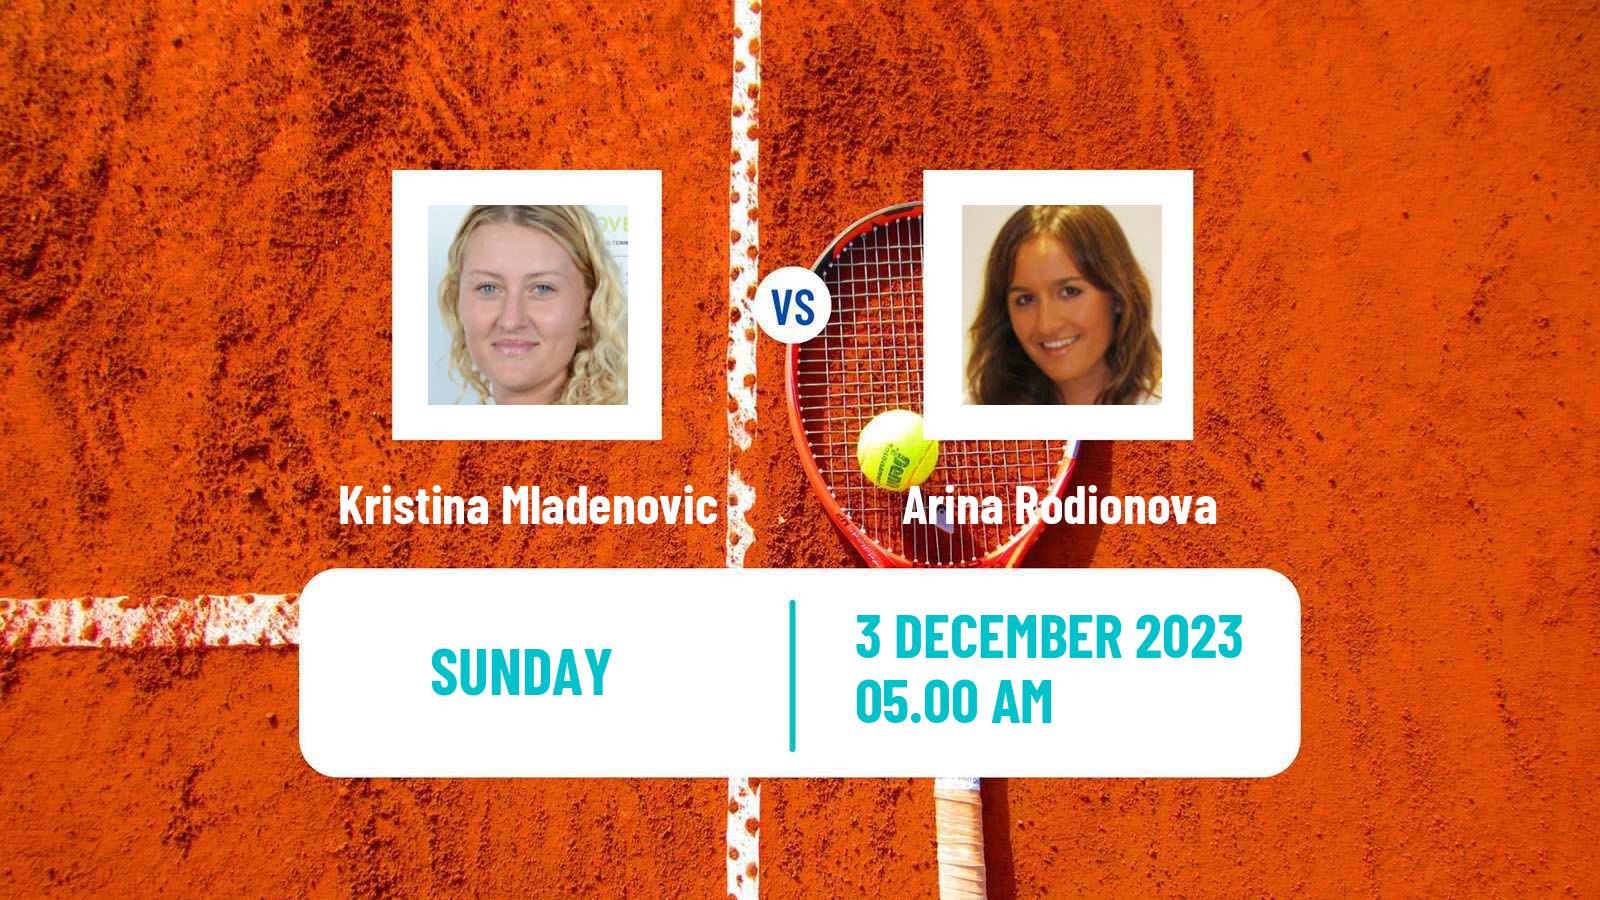 Tennis ITF W60 Trnava 3 Women Kristina Mladenovic - Arina Rodionova